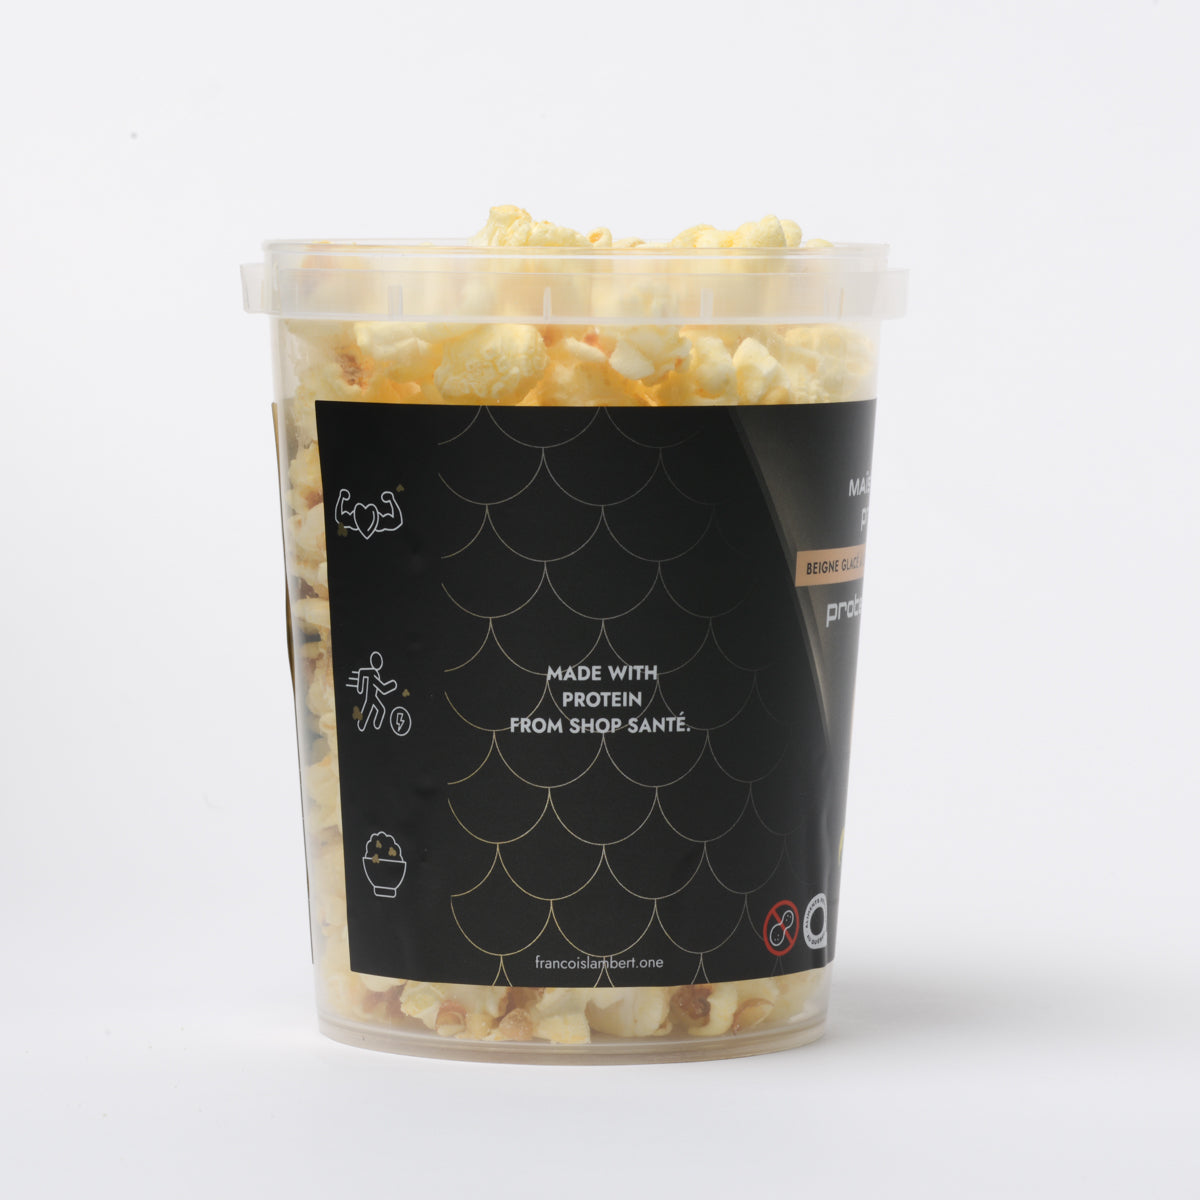 Popcorn protéiné - Beigne glacé à l'érable